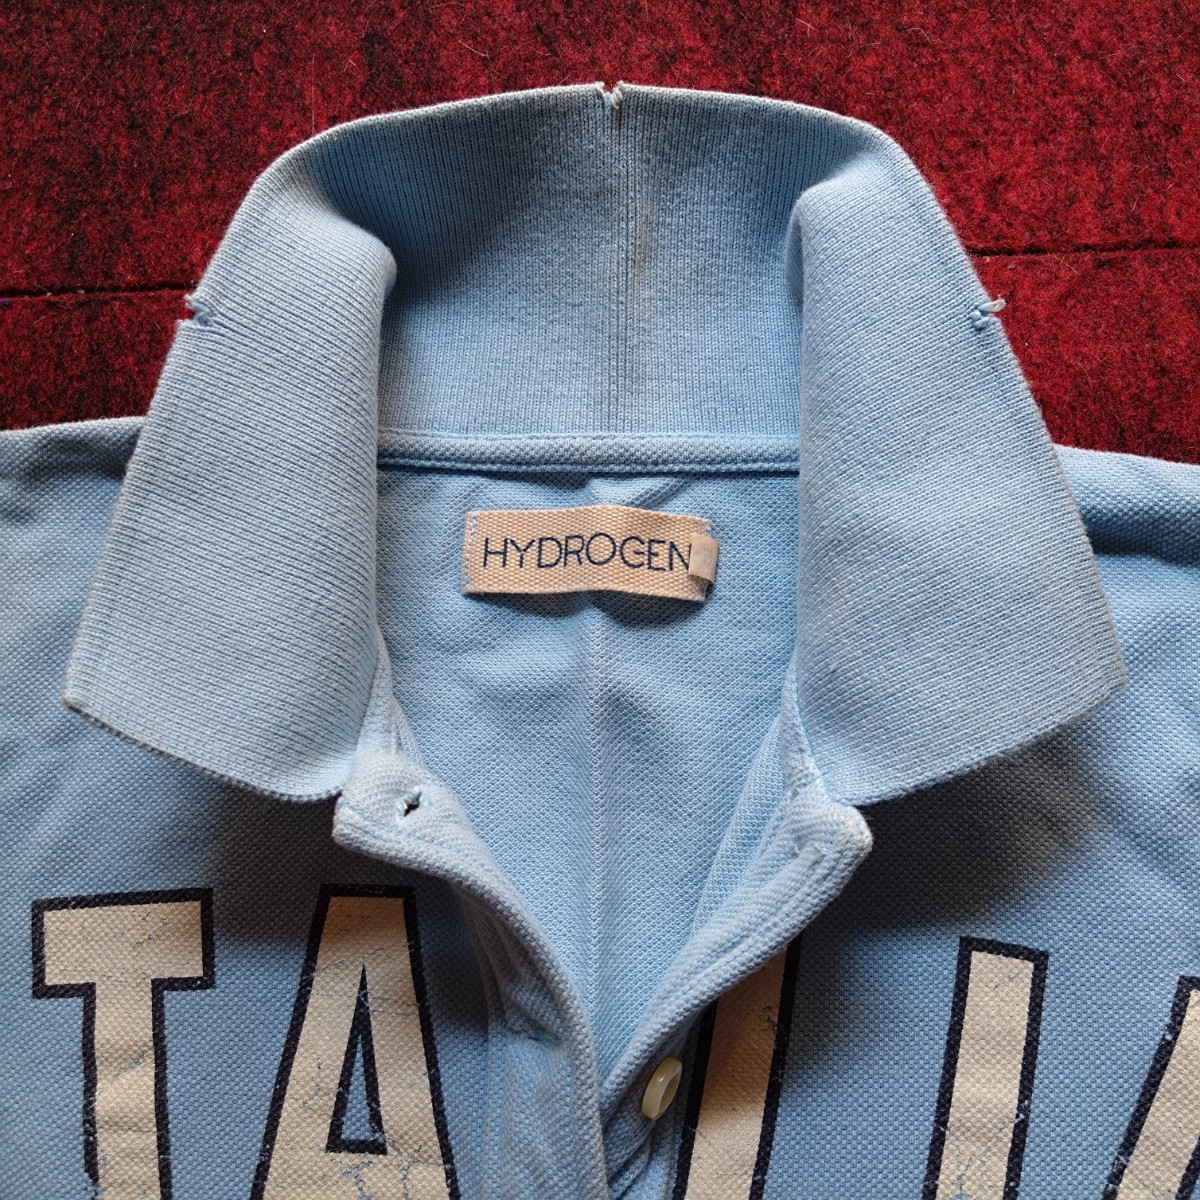  не использовался редкий Vintage HYDROGEN повреждение обработка рубашка-поло с длинным рукавом XS ITALIA Logo 2004 год первый период голубой на месте покупка fi Len tse унисекс 